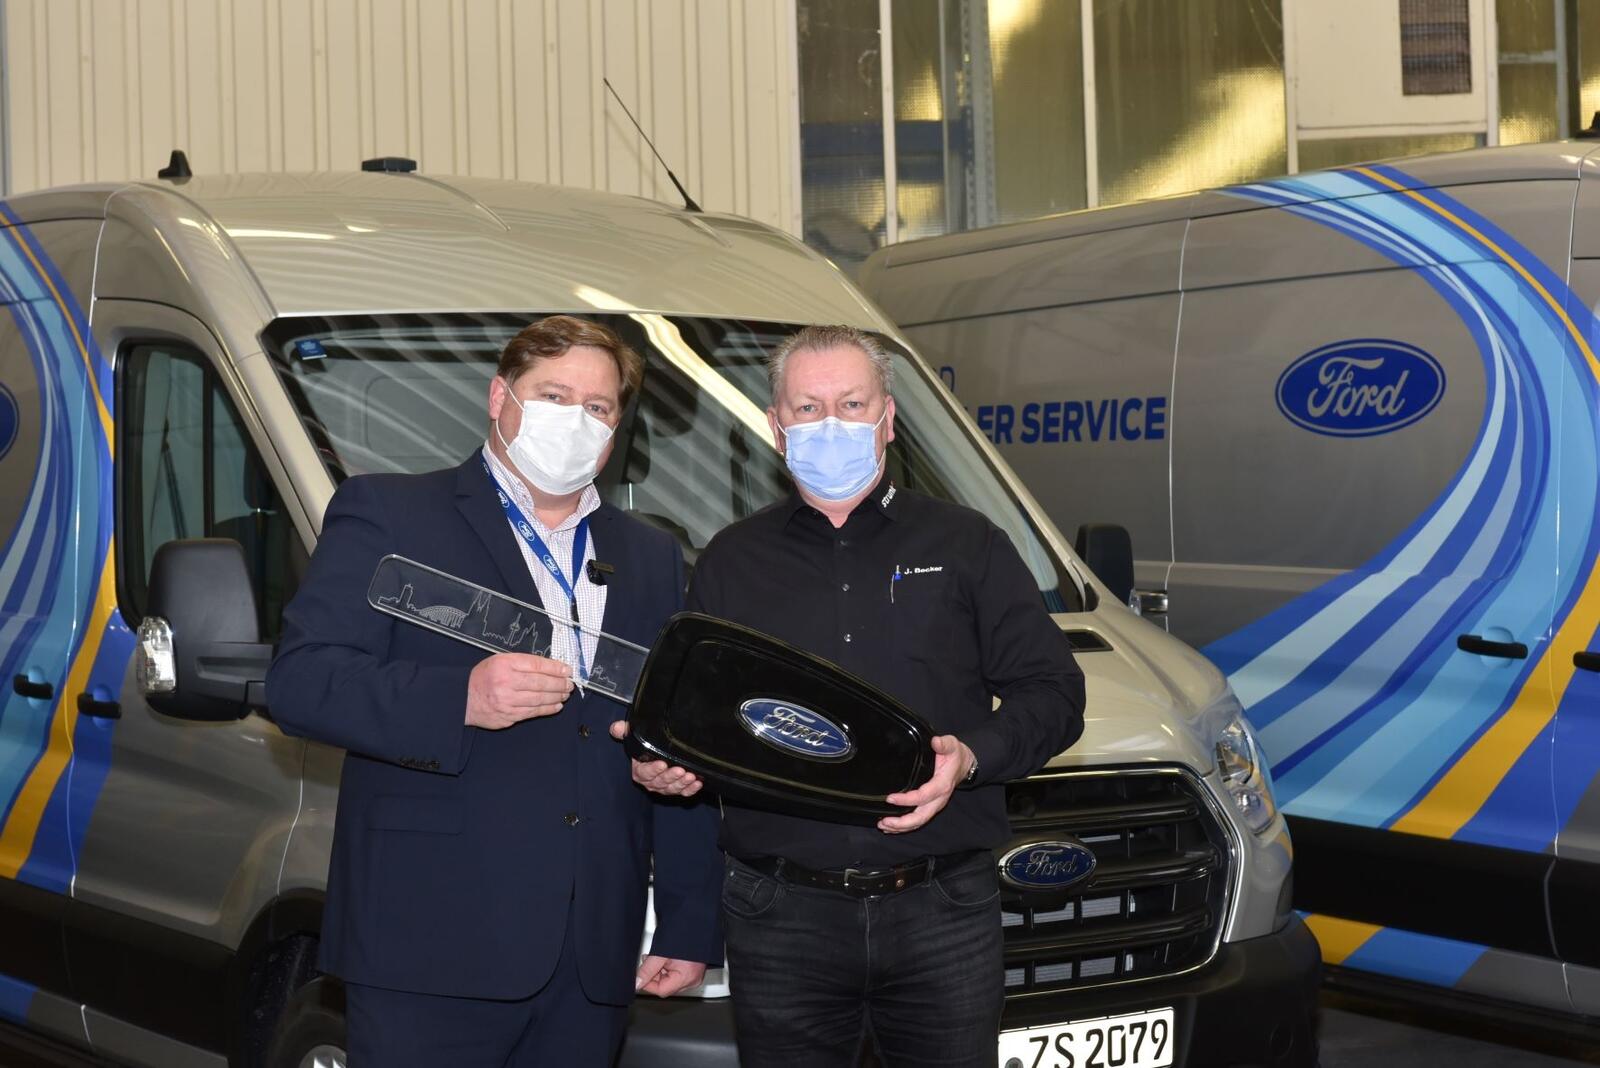 Jörg Pilger übergab als Direktor Ford Kunden-Service zum Projektstart im vergangenen Jahr einen Service-Van an Jürgen Becker (re.), Betriebsleiter des Kölner Ford-Partner Autohaus Strunk. Der Autobauer hat ein aktuelles Zwischenfazit gezogen.